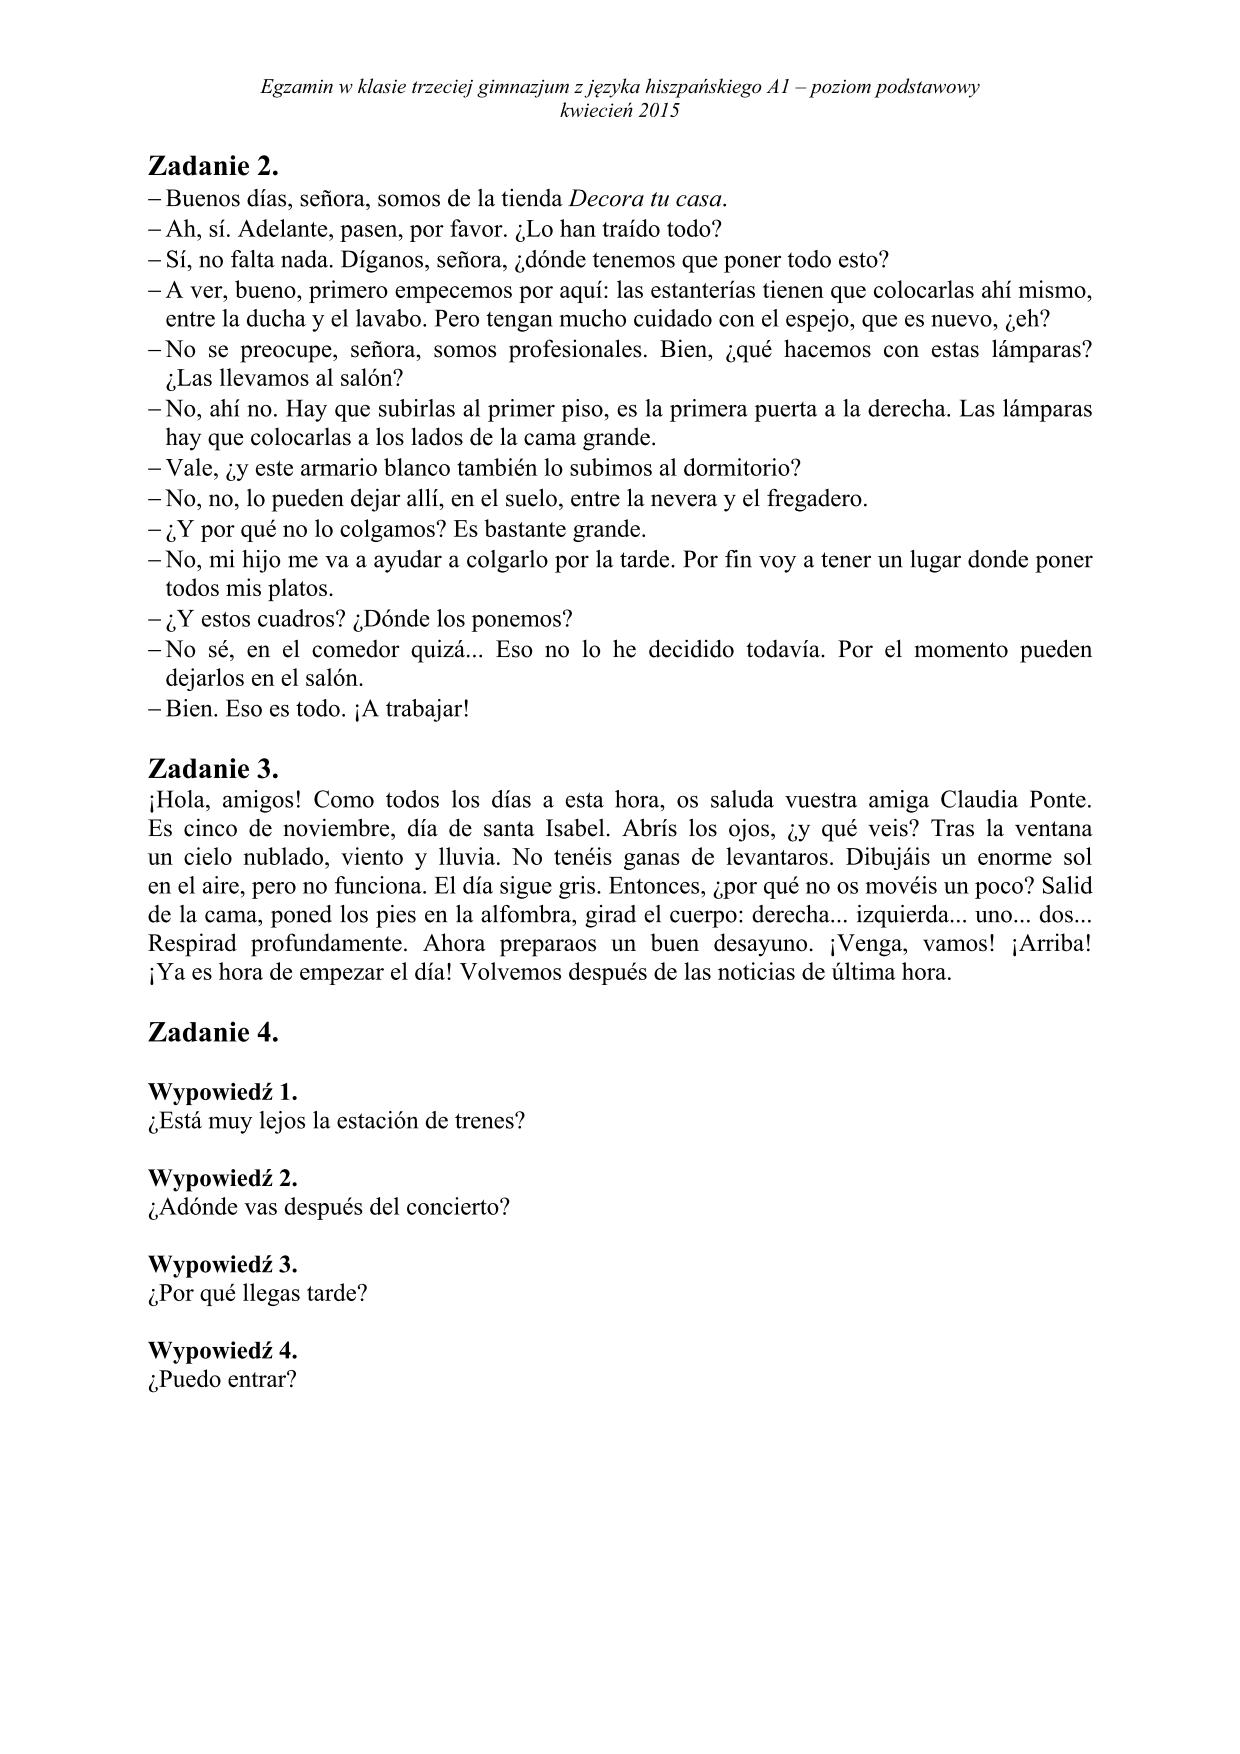 transkrypcja-hiszpański-poziom-podstawowy-egzamin-gimnazjalny-2015-2